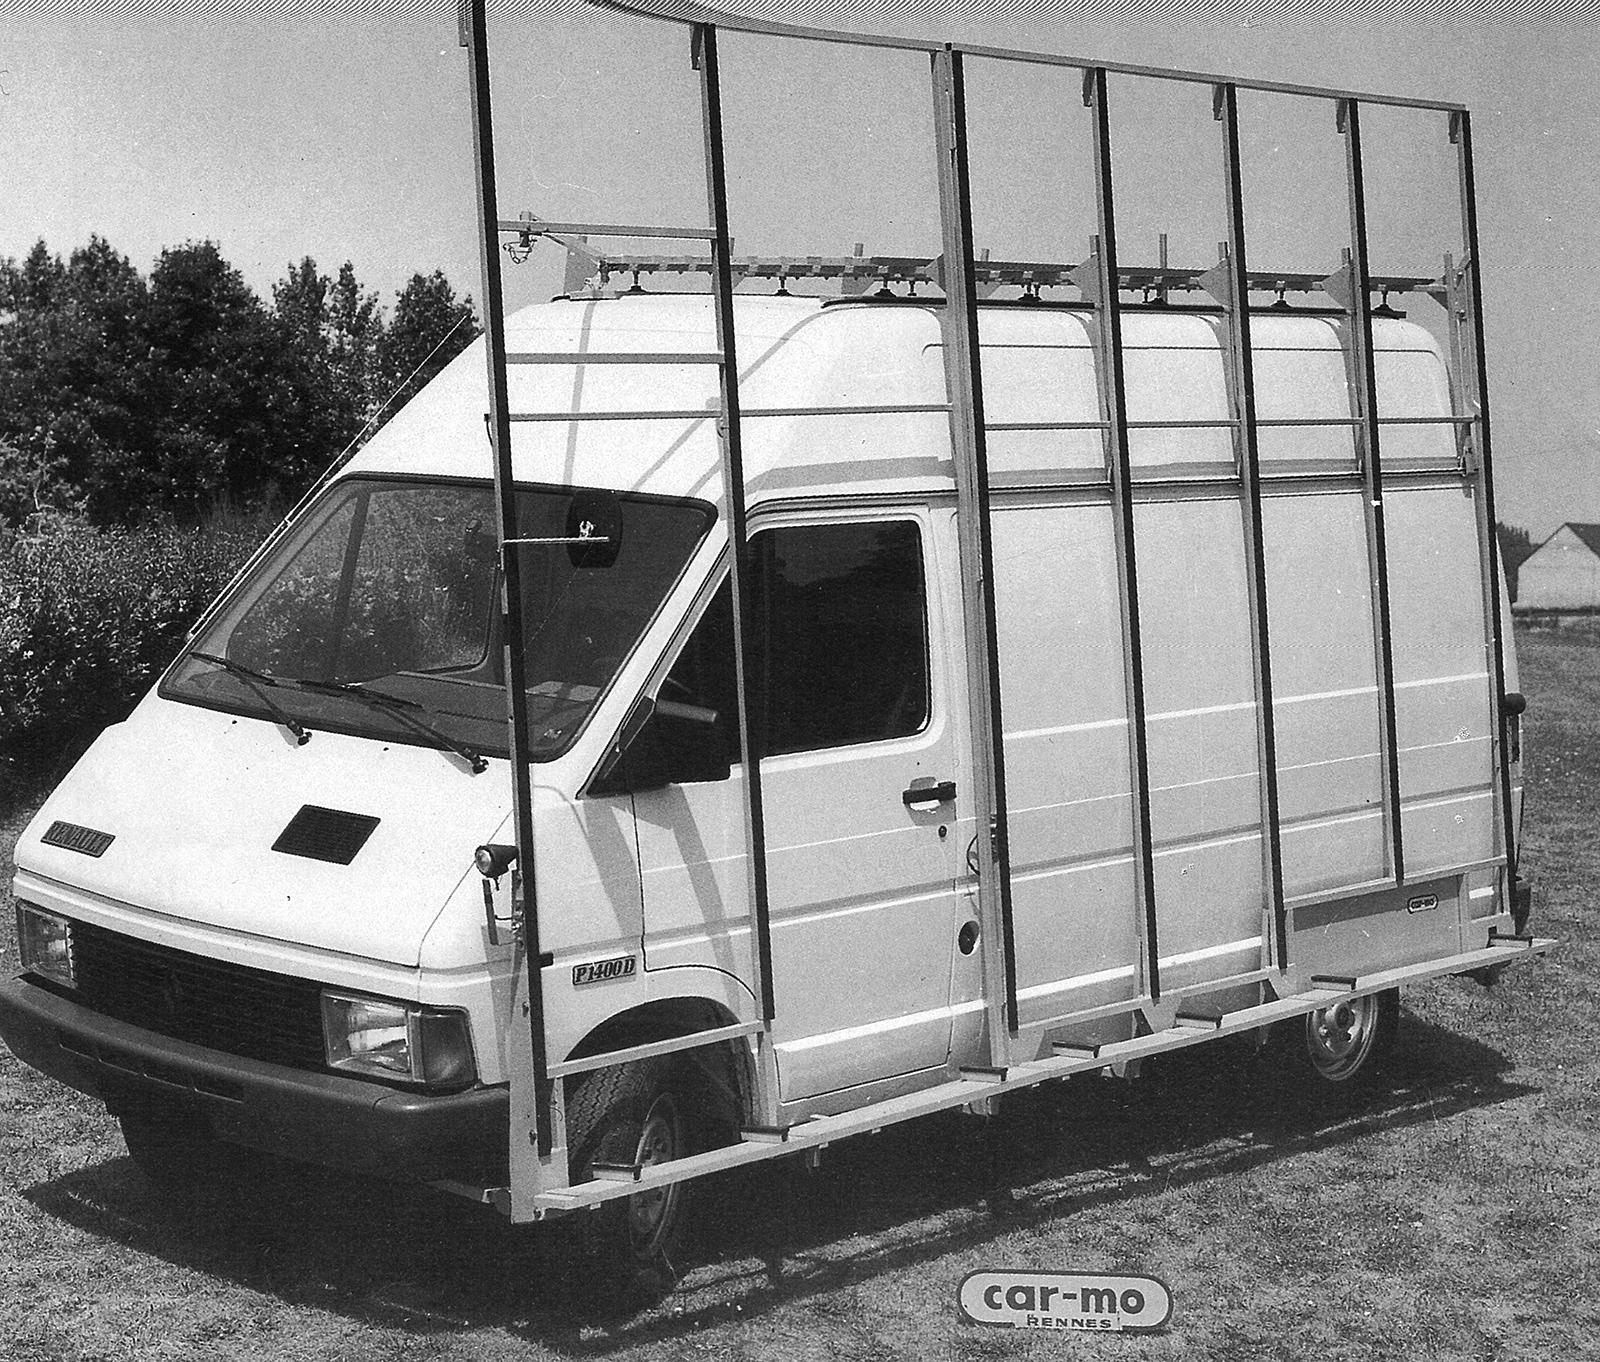 Renault Trafic 1980-2001. 1980, fini les carrosseries passoires, le début de la généralisation et standardisation de nouvelles fixations, toujours d'actualité 40 ans plus tard